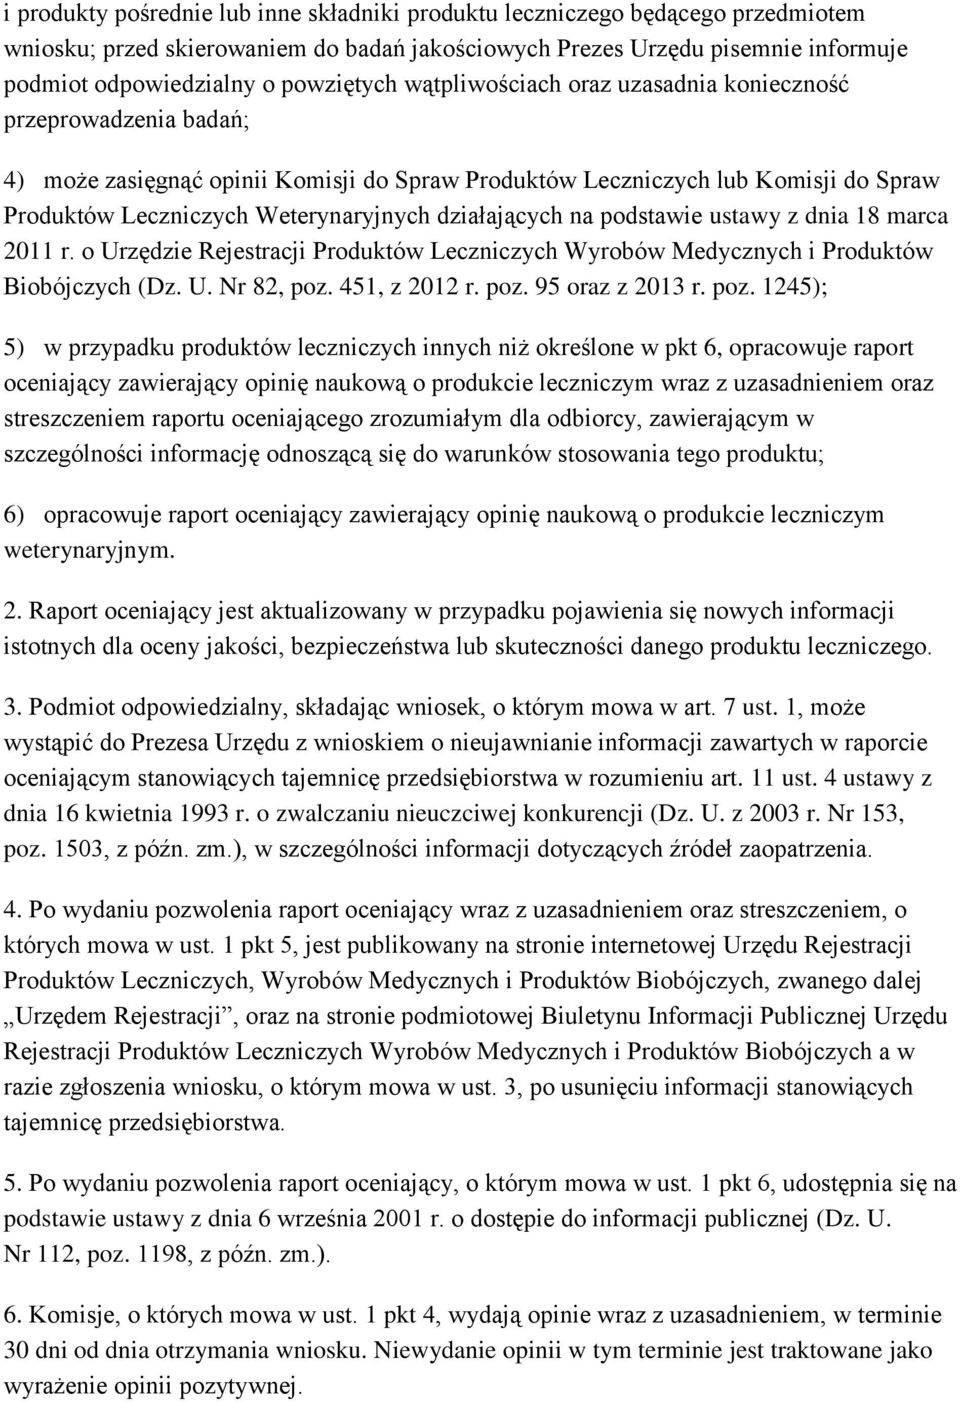 działających na podstawie ustawy z dnia 18 marca 2011 r. o Urzędzie Rejestracji Produktów Leczniczych Wyrobów Medycznych i Produktów Biobójczych (Dz. U. Nr 82, poz. 451, z 2012 r. poz. 95 oraz z 2013 r.